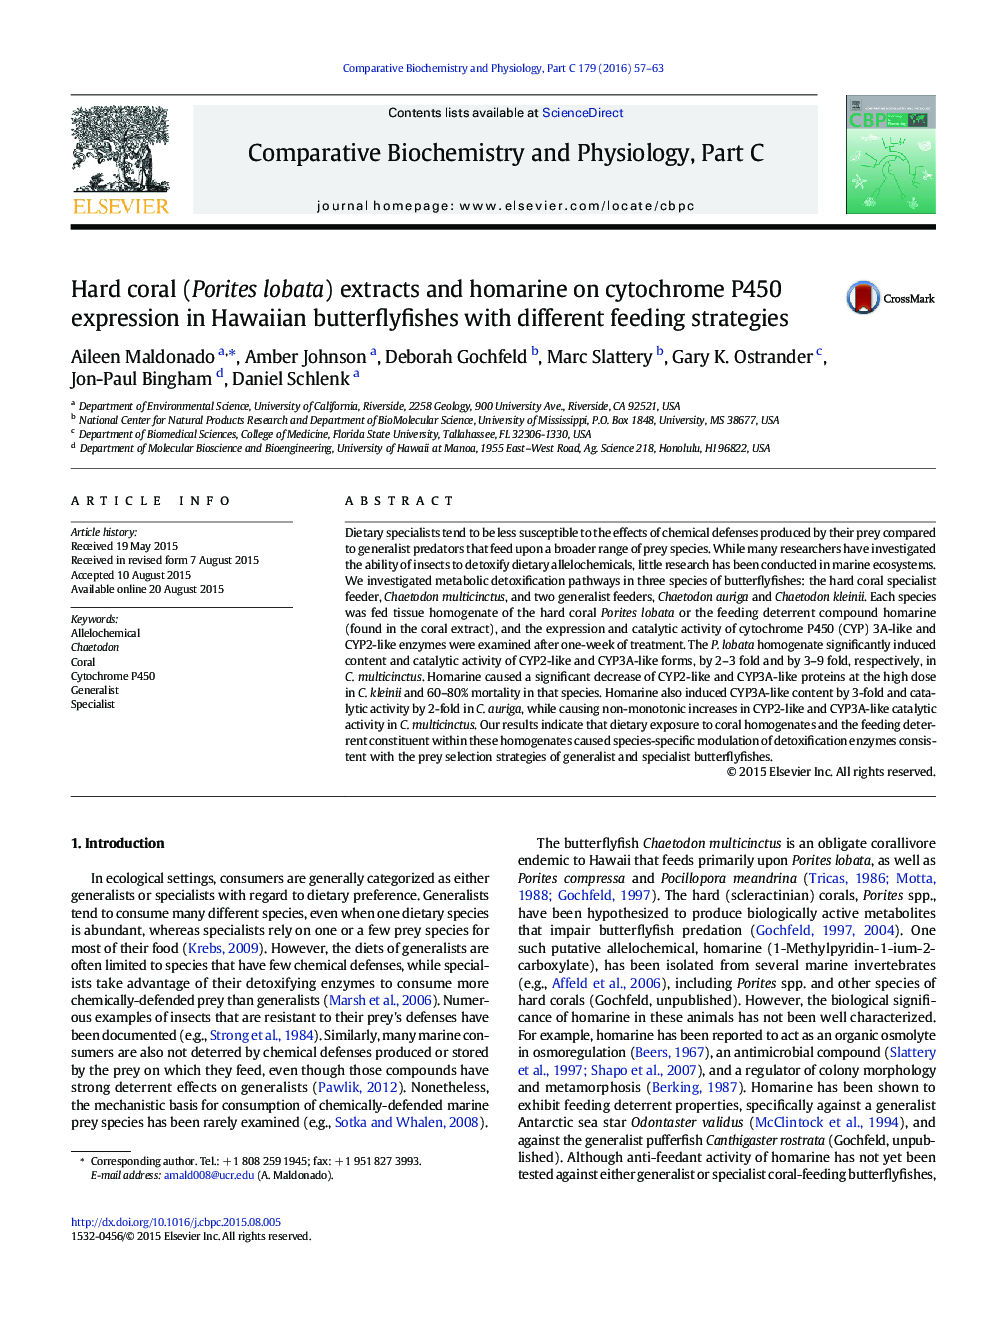 عصاره های مرجانی سخت (Porites lobata) و همارین بر روی بیان سیتوکروم P450 در Butterflyfishes هاوایی با استراتژی های مختلف تغذیه